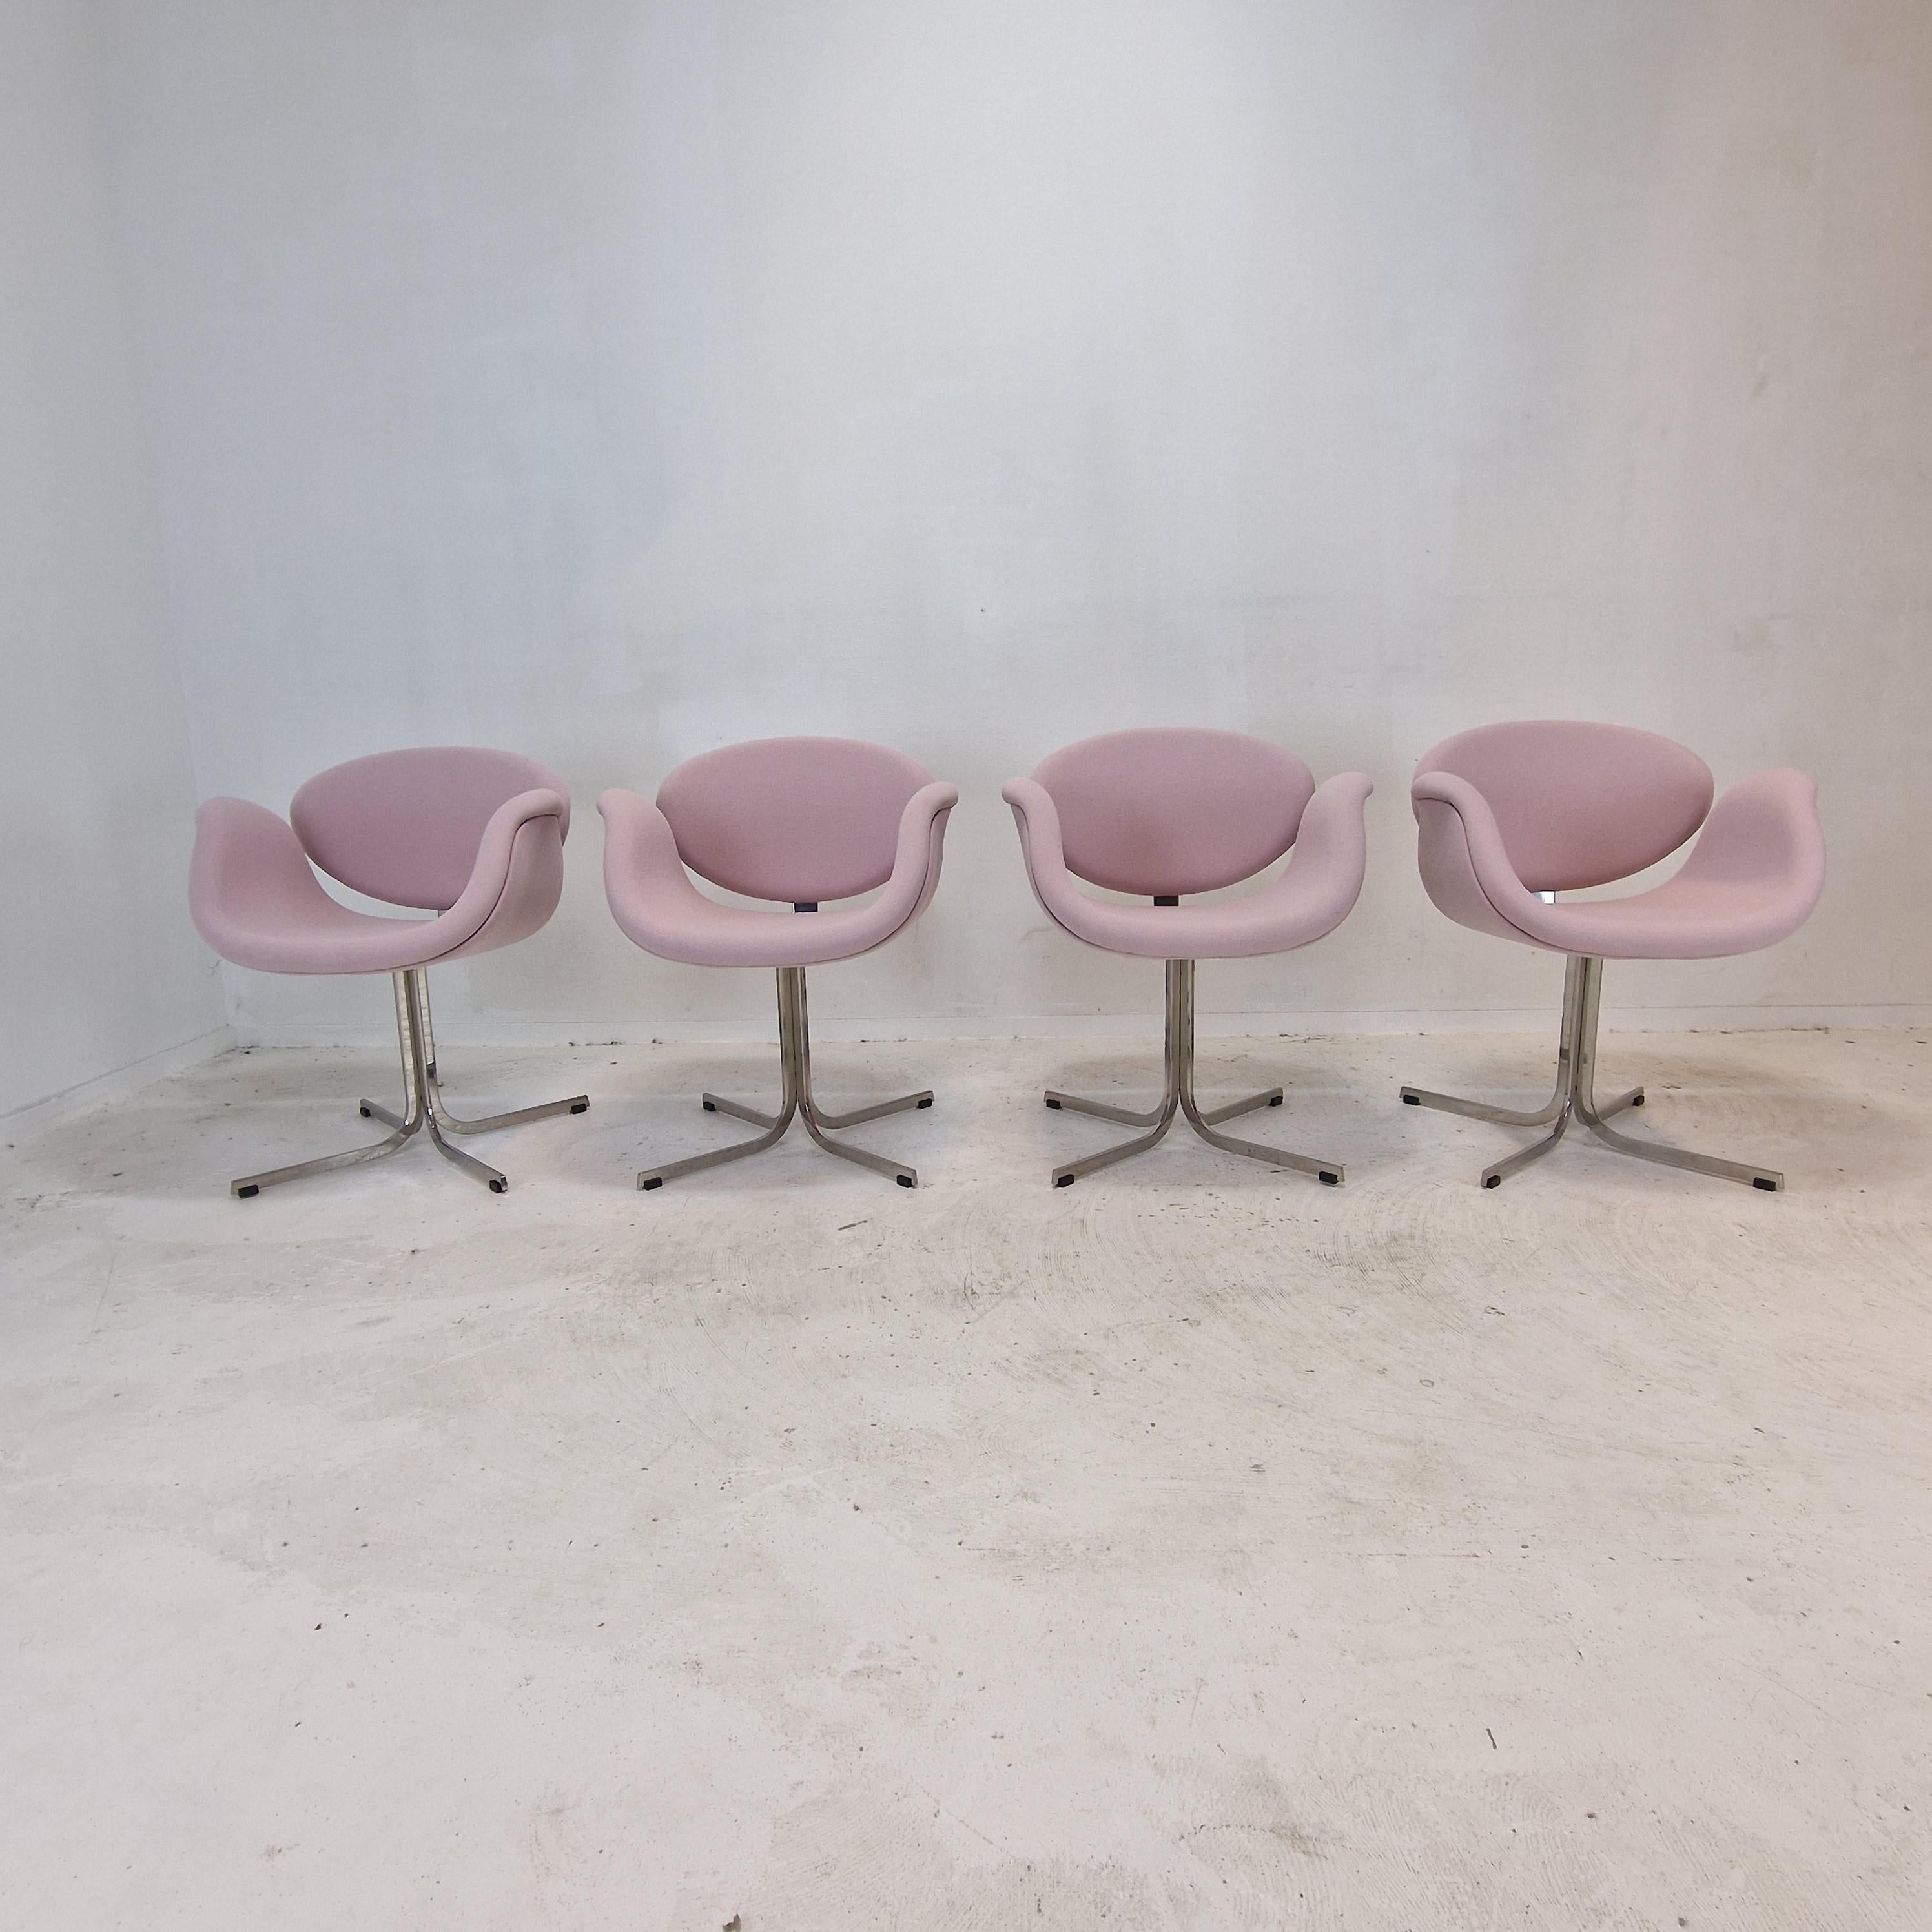 Ensemble de 4 fauteuils Little Tulip.
Ces fauteuils mignons et très confortables ont été conçus par le célèbre designer français Pierre Paulin dans les années 60. 
Ils sont produits par Artifort.

Croix en métal très solide avec un cadre en